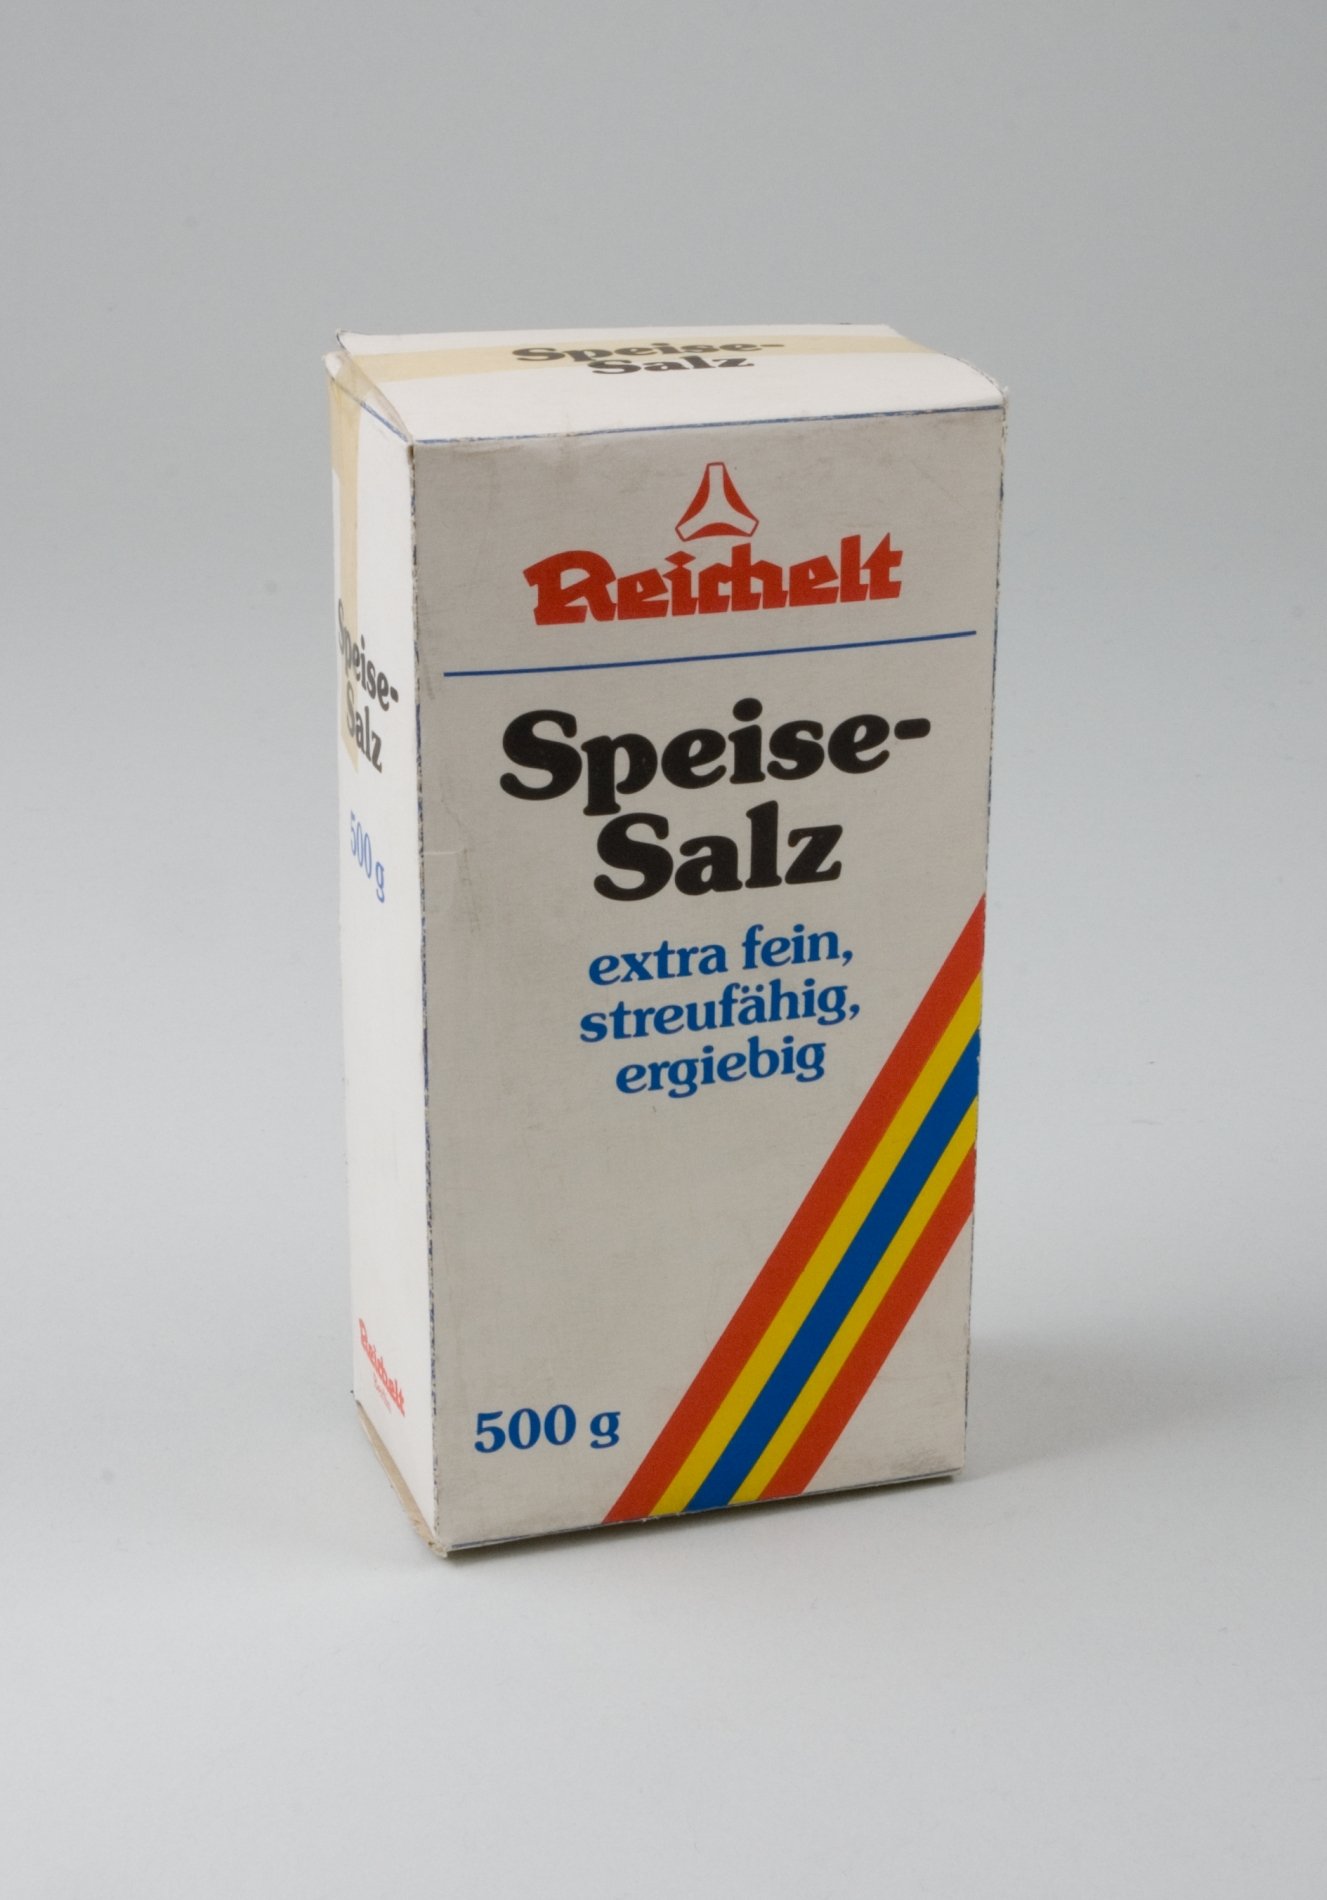 Verpackungs- Entwurf für Speise- Salz der Firma "Reichelt" (Stiftung Domäne Dahlem - Landgut und Museum, Weiternutzung nur mit Genehmigung des Museums CC BY-NC-SA)